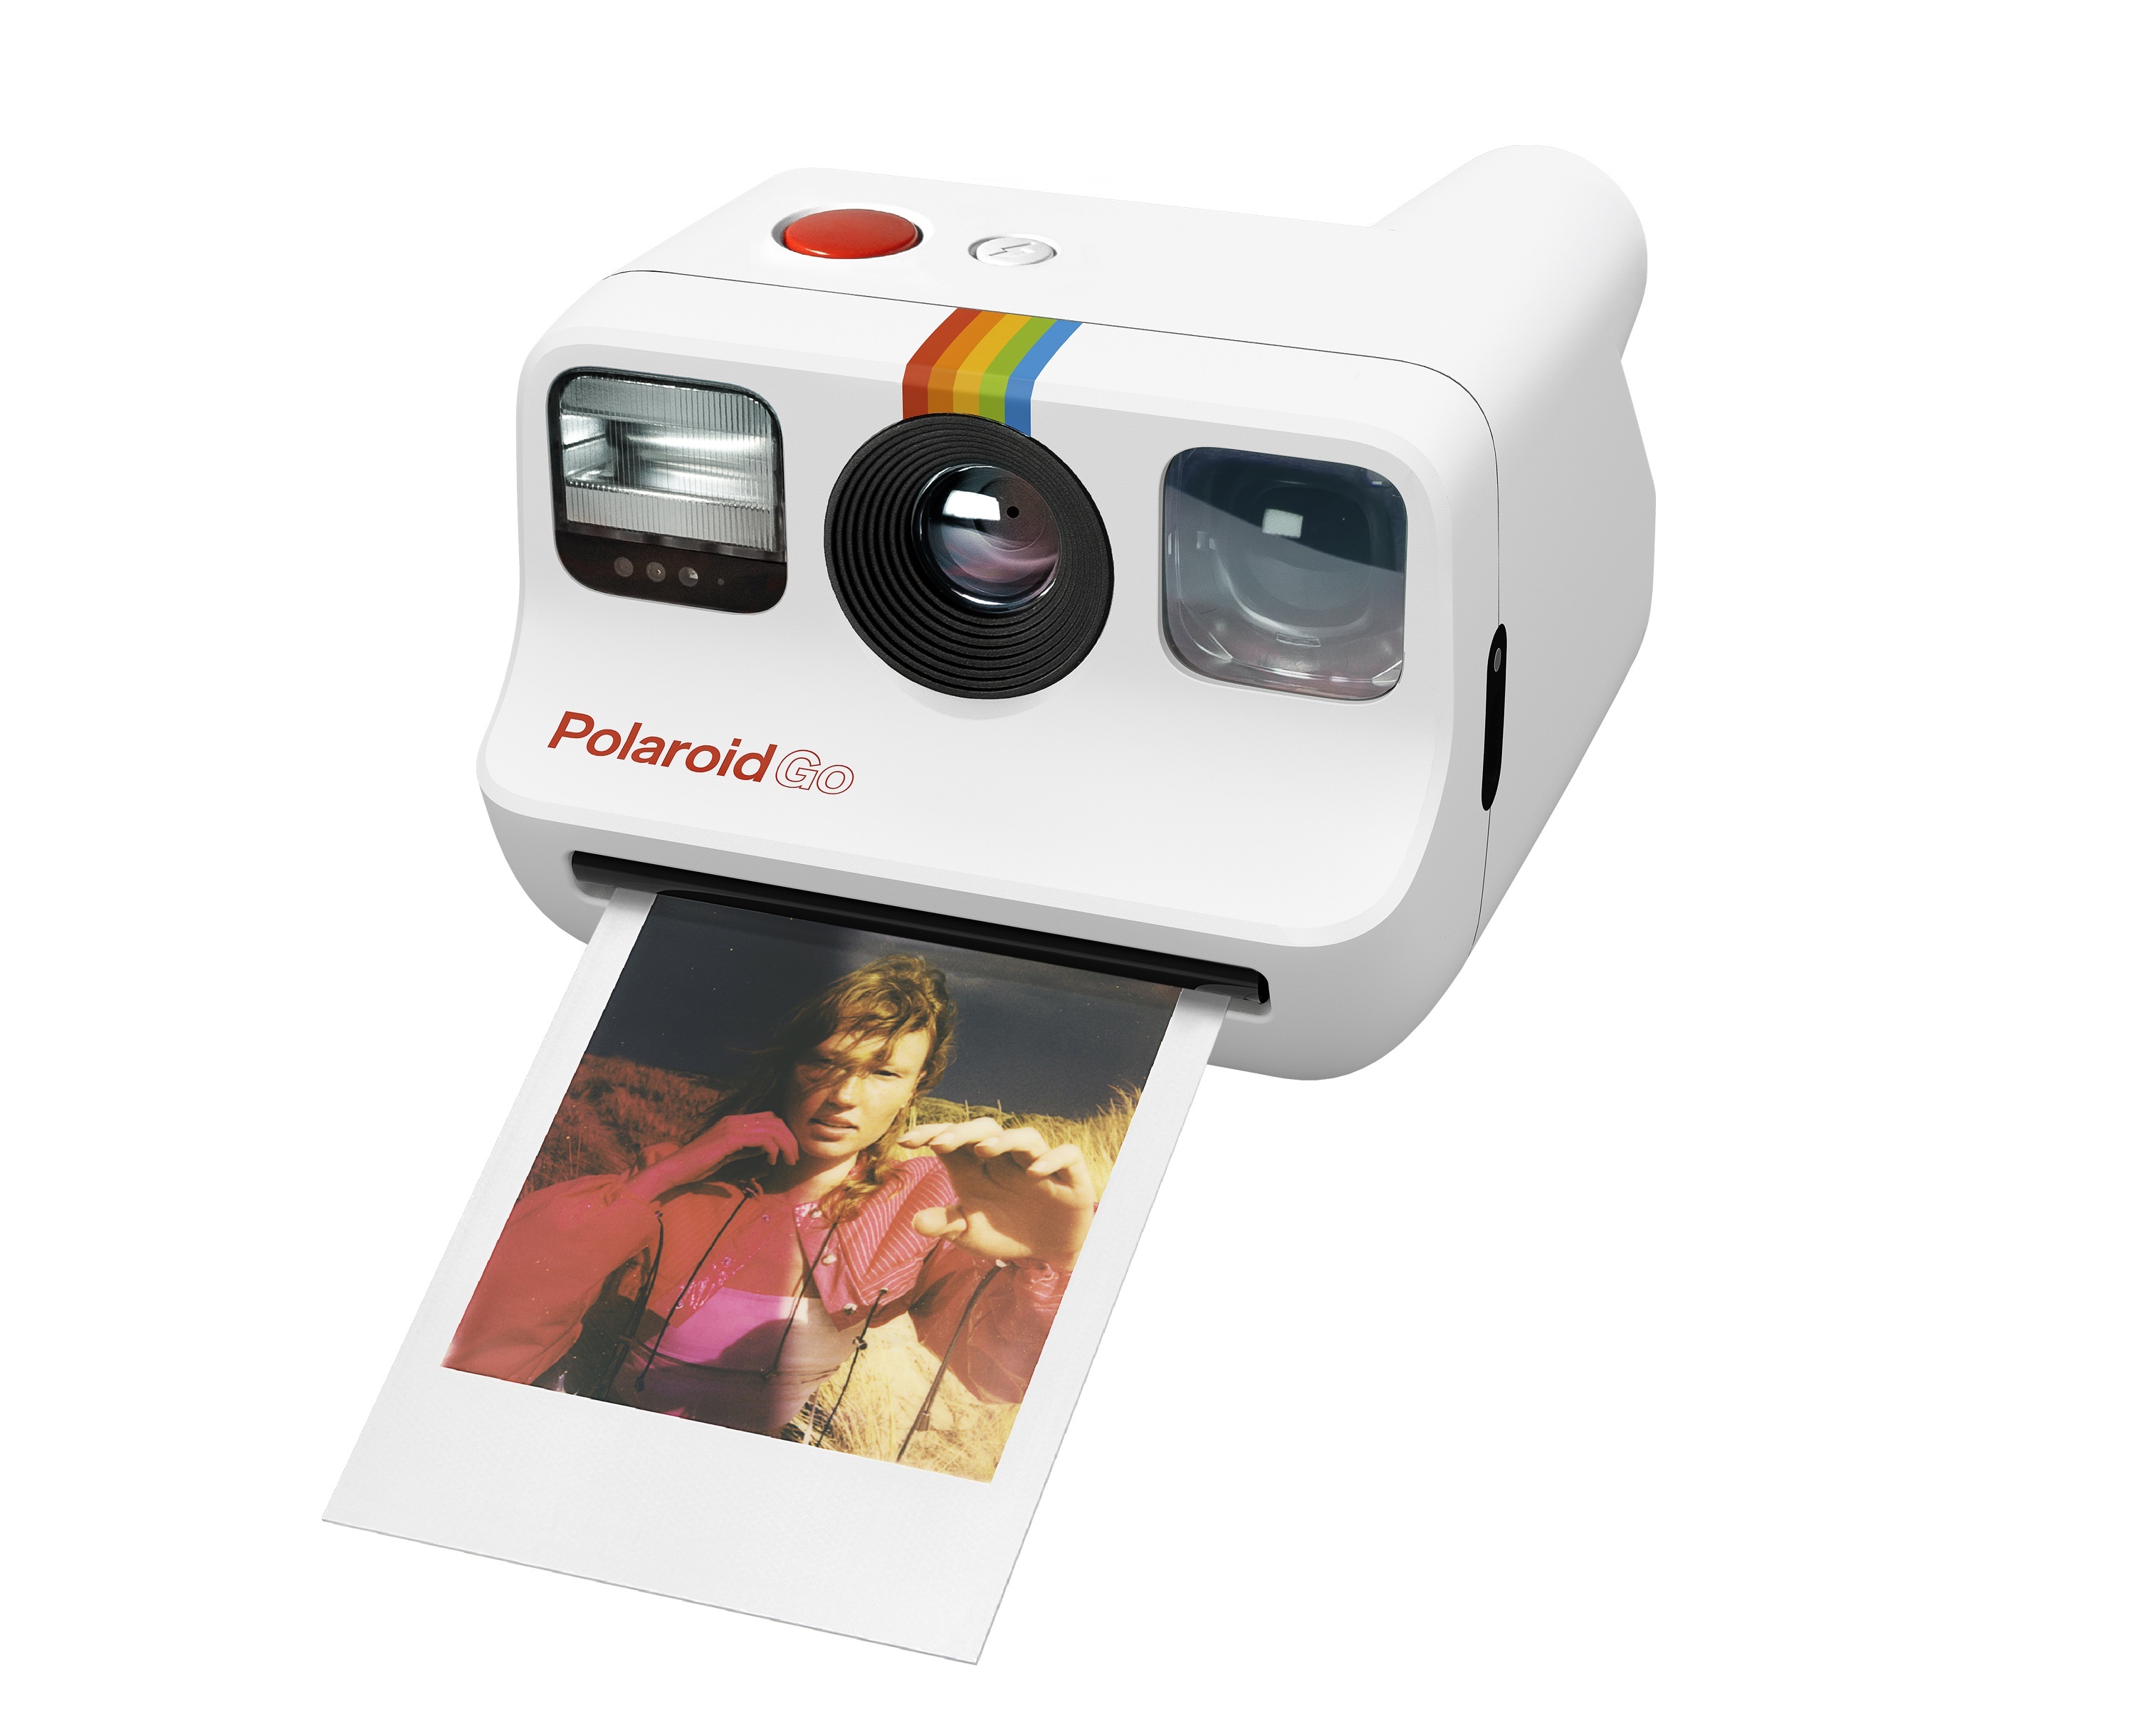 Portaltic.-Polaroid su analógica más pequeña, Polaroid Go - Infobae